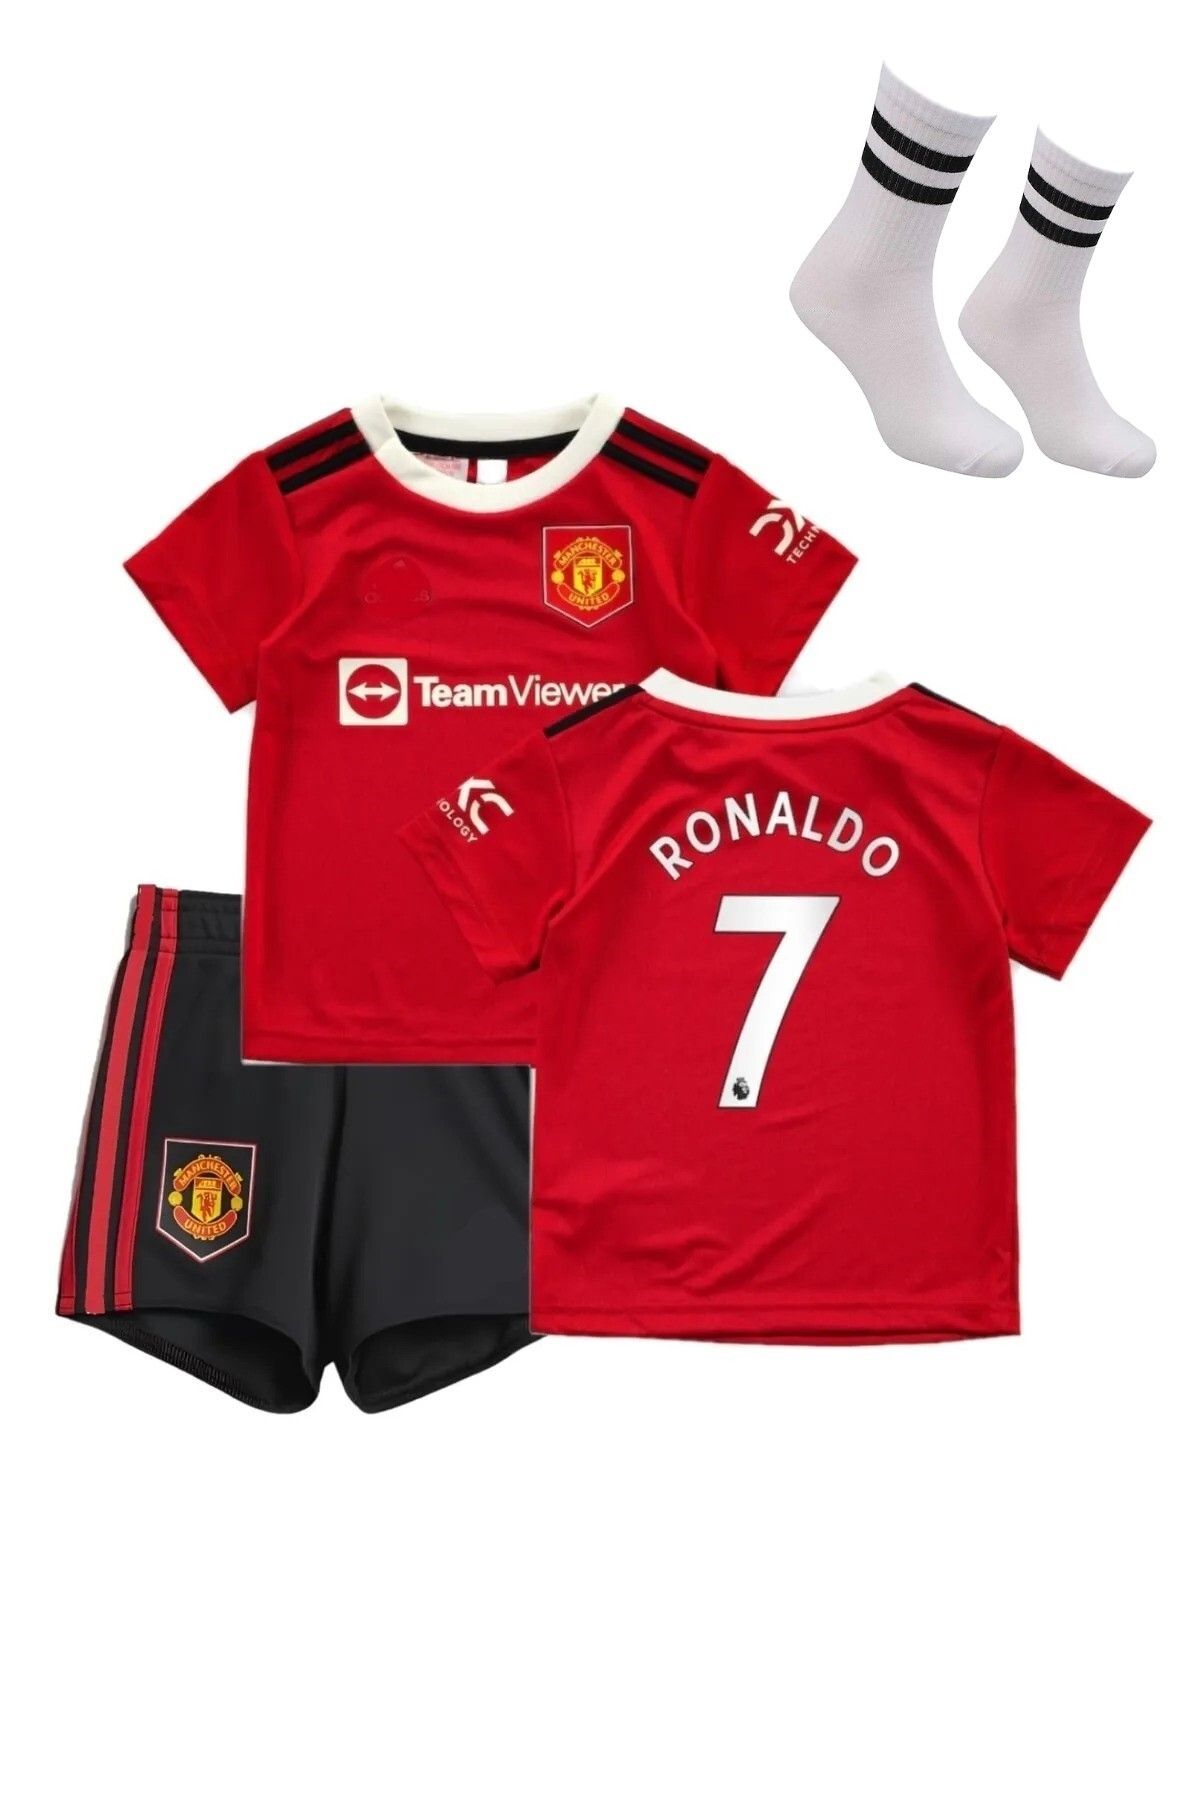 gökmenspor Manchester Ronaldo Koyu Bordo Özel Tasarım Çocuk Futbol Forması 22-2023 Sezon 4'lü Set Hediyeli